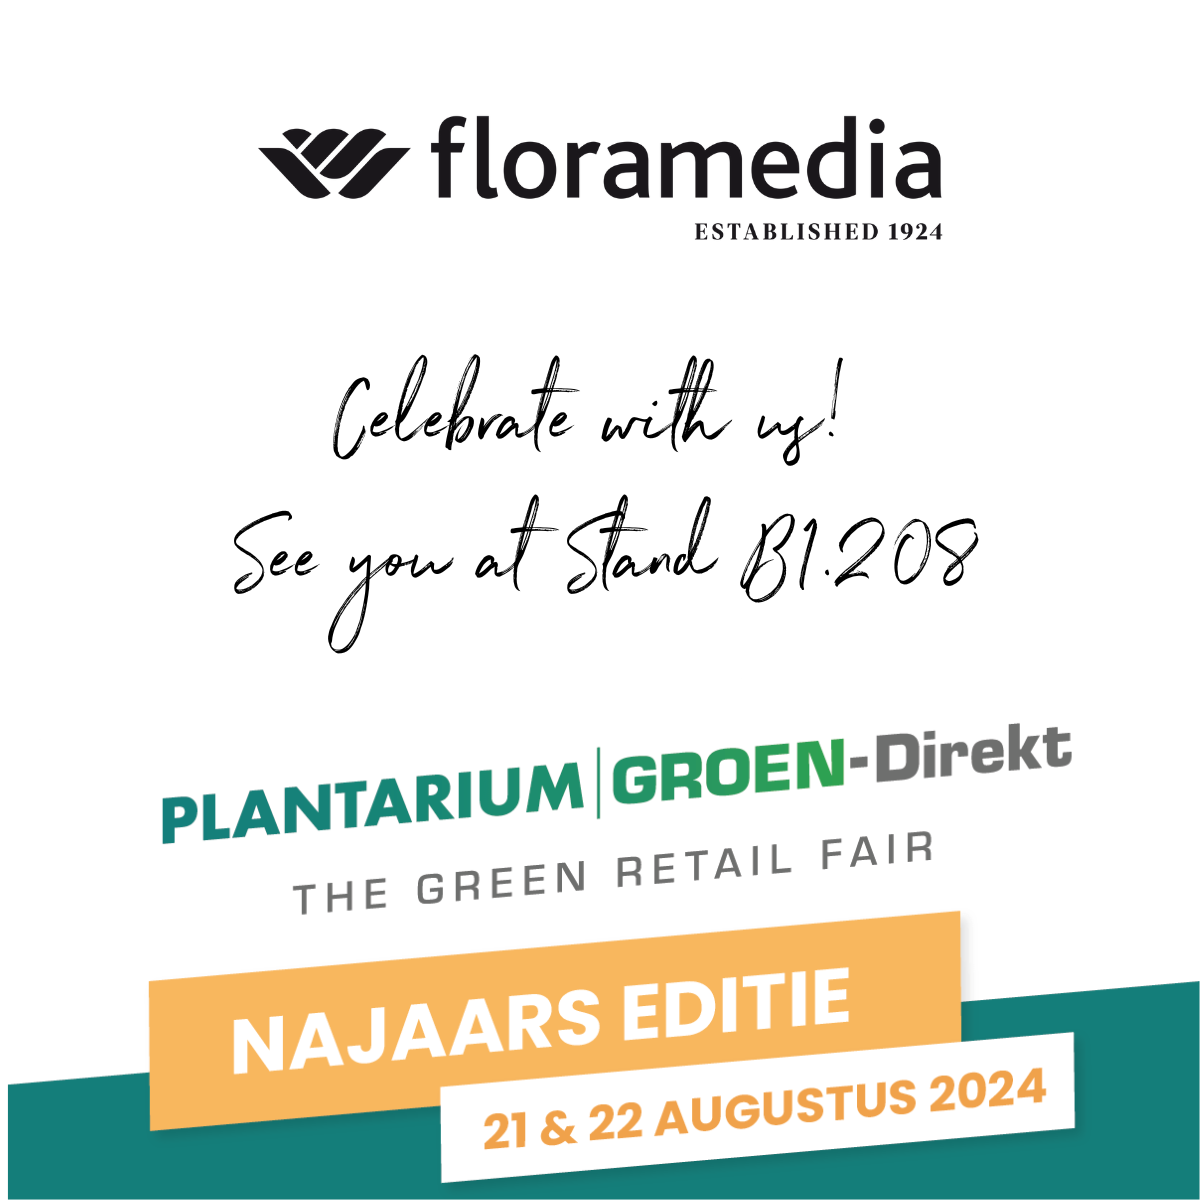 Bezoek onze stand tijdens Plantarium I Groen Direkt op 21 & 22 augustus 2024